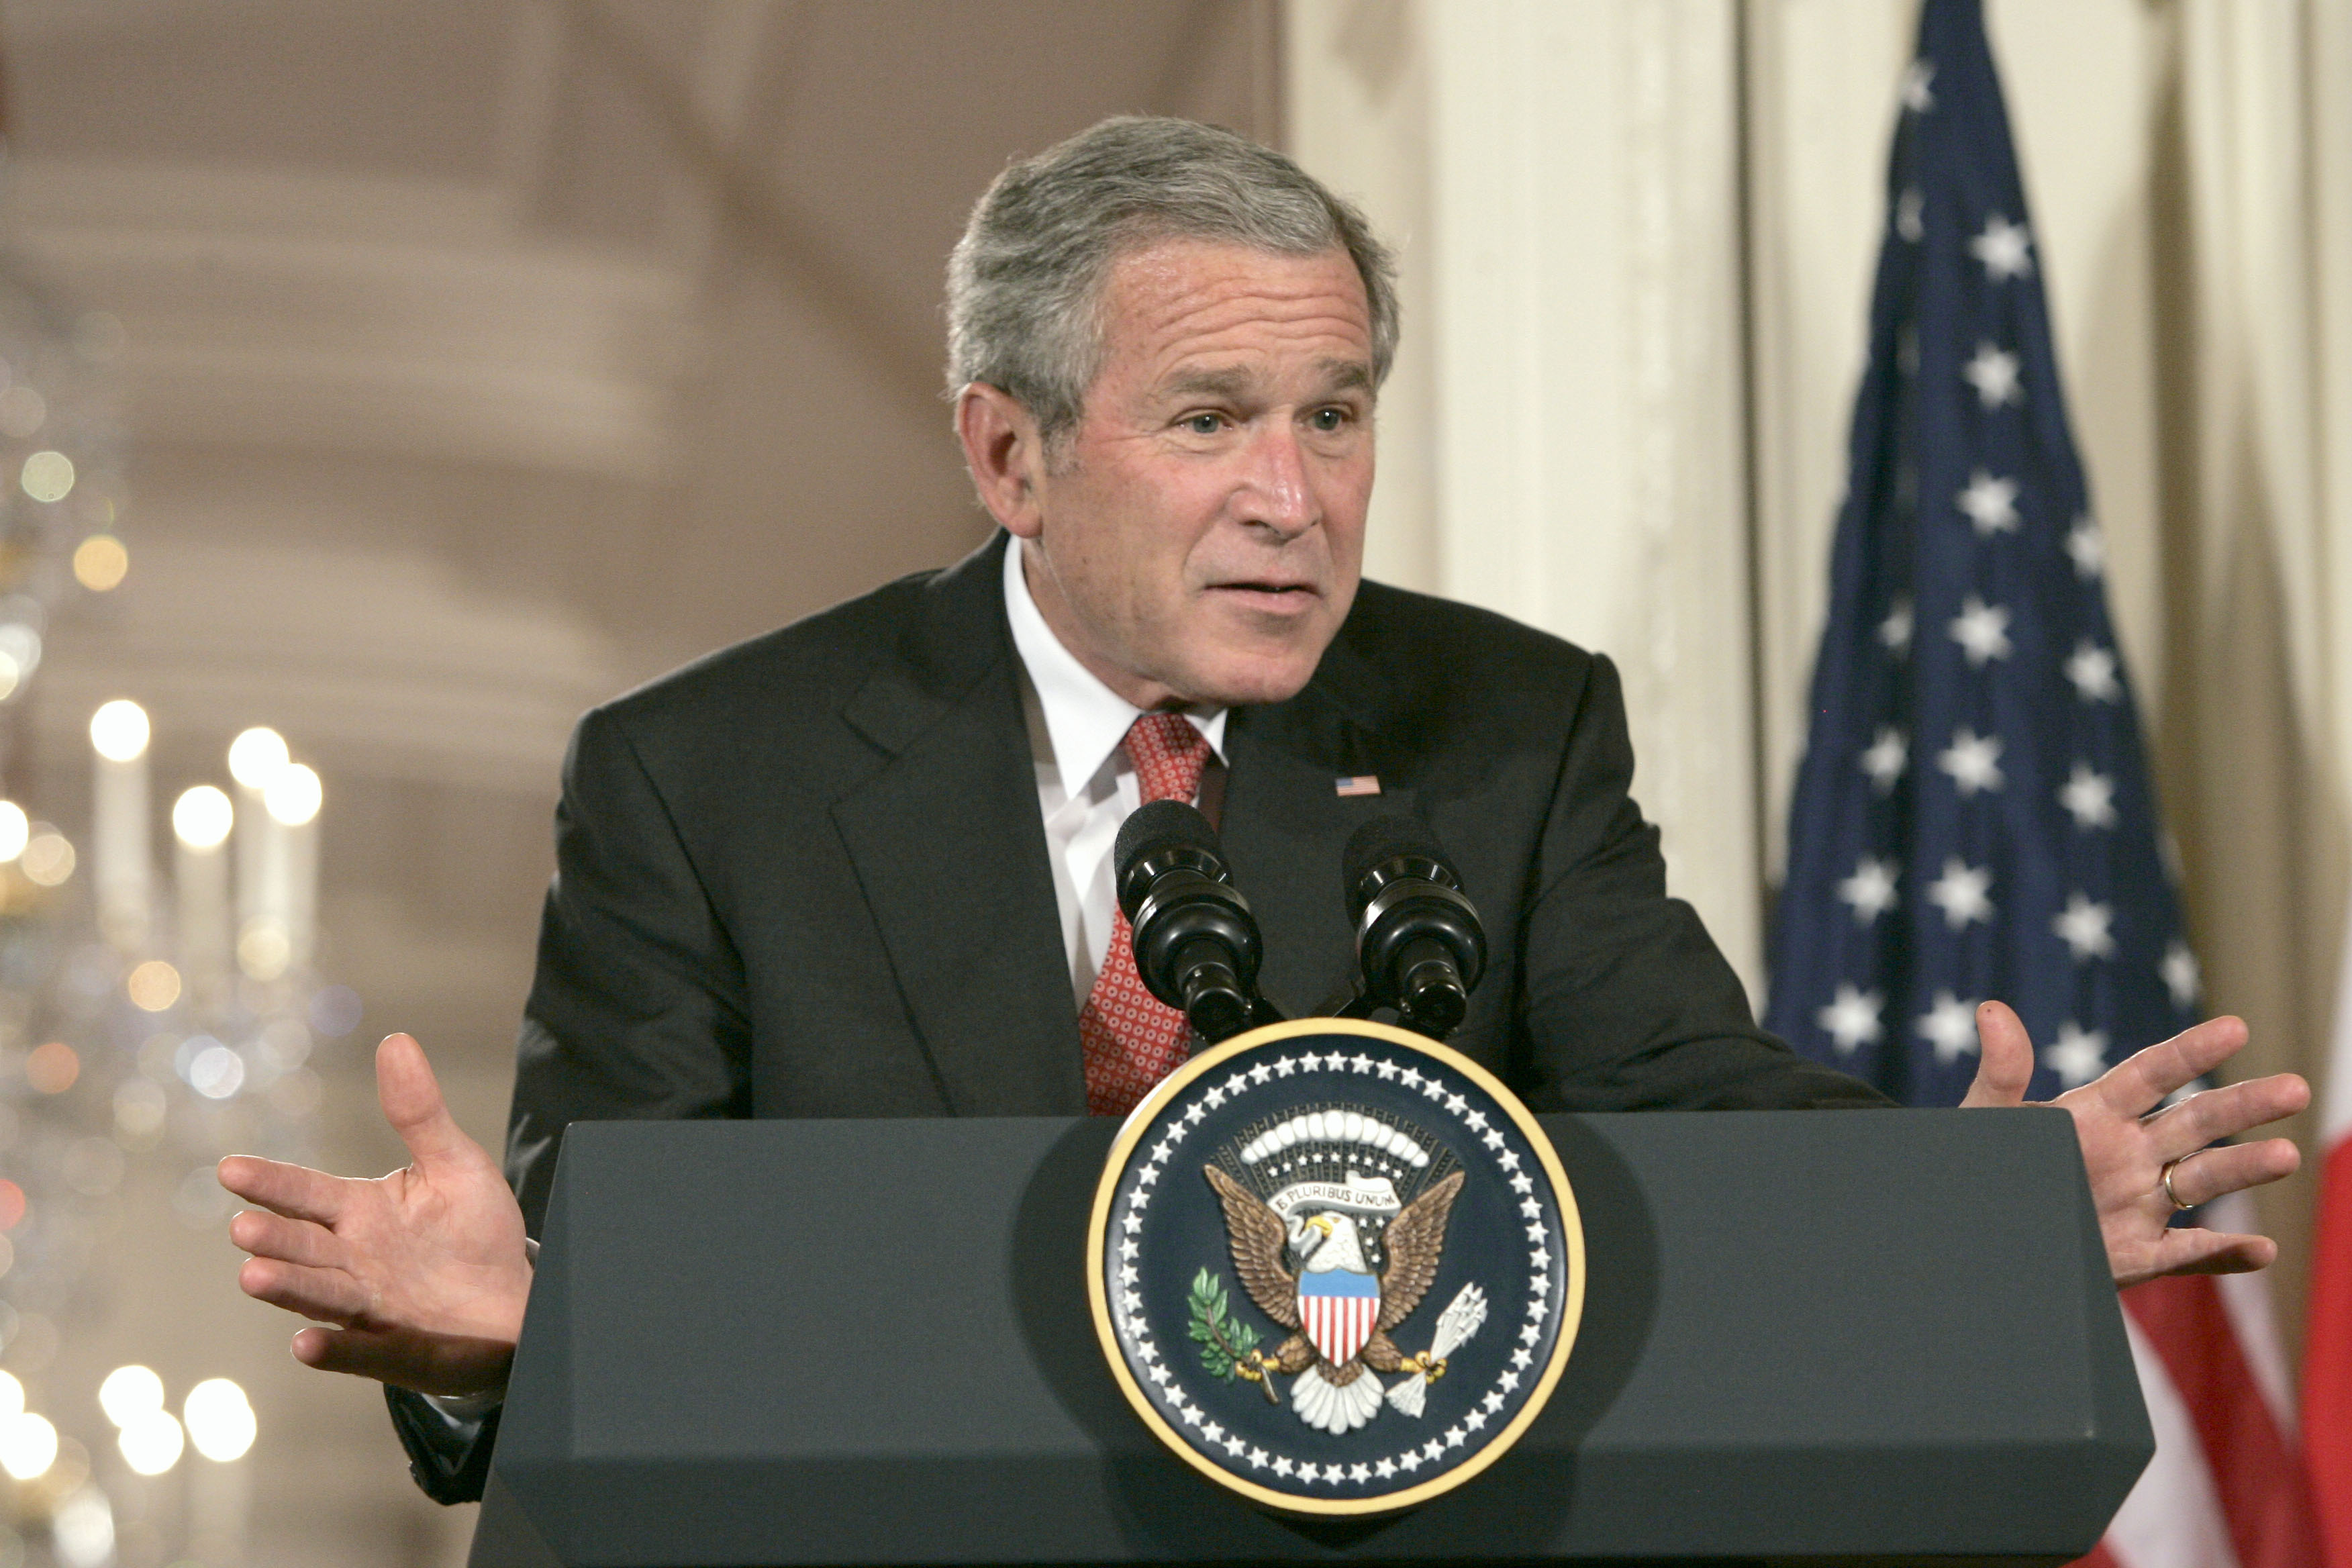 Inte minst den dåvarande presidenten George Bush fick ta emot massiv kritik för hur fångarna på Guantanamofängelset behandlades. I juni 2006 riktade Högsta Domstolen i USA kritik mot Bush för att ha överskridit sina befogenheter när han beordrat att fånga